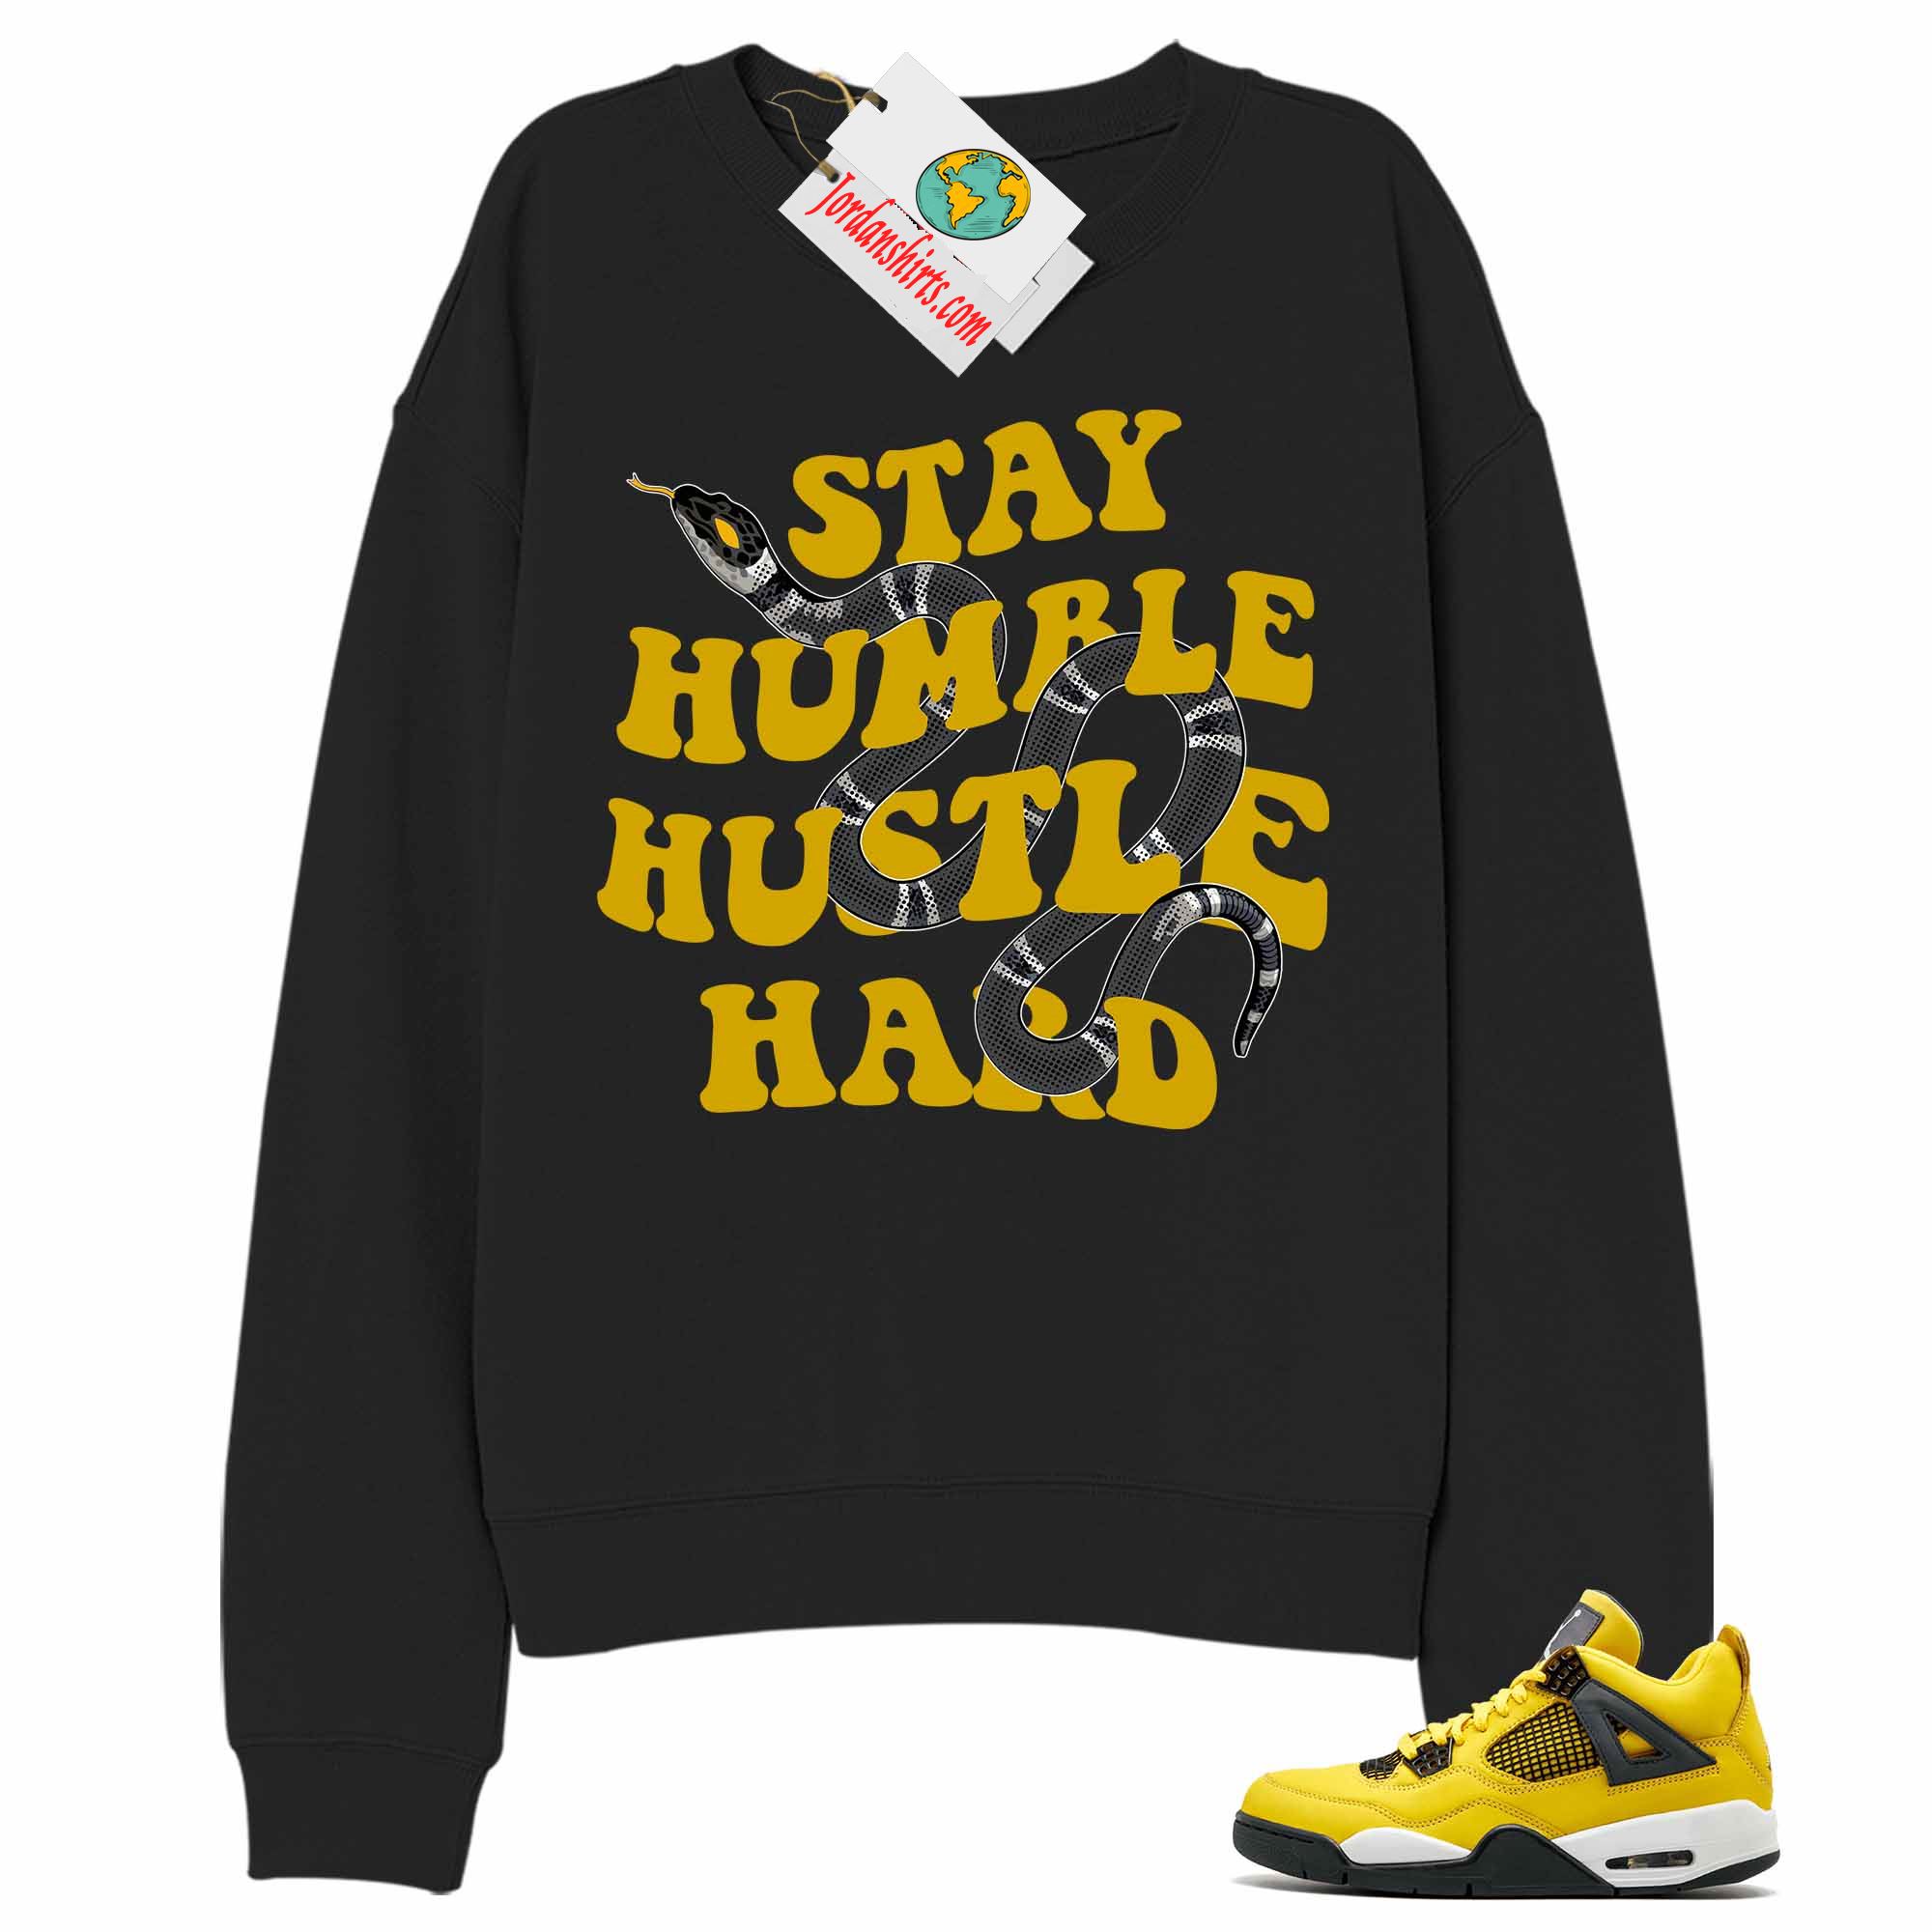 Jordan 4 Sweatshirt, Stay Humble Hustle Hard King Snake Black Sweatshirt Air Jordan 4 Tour Yellow Lightning 4s Full Size Up To 5xl